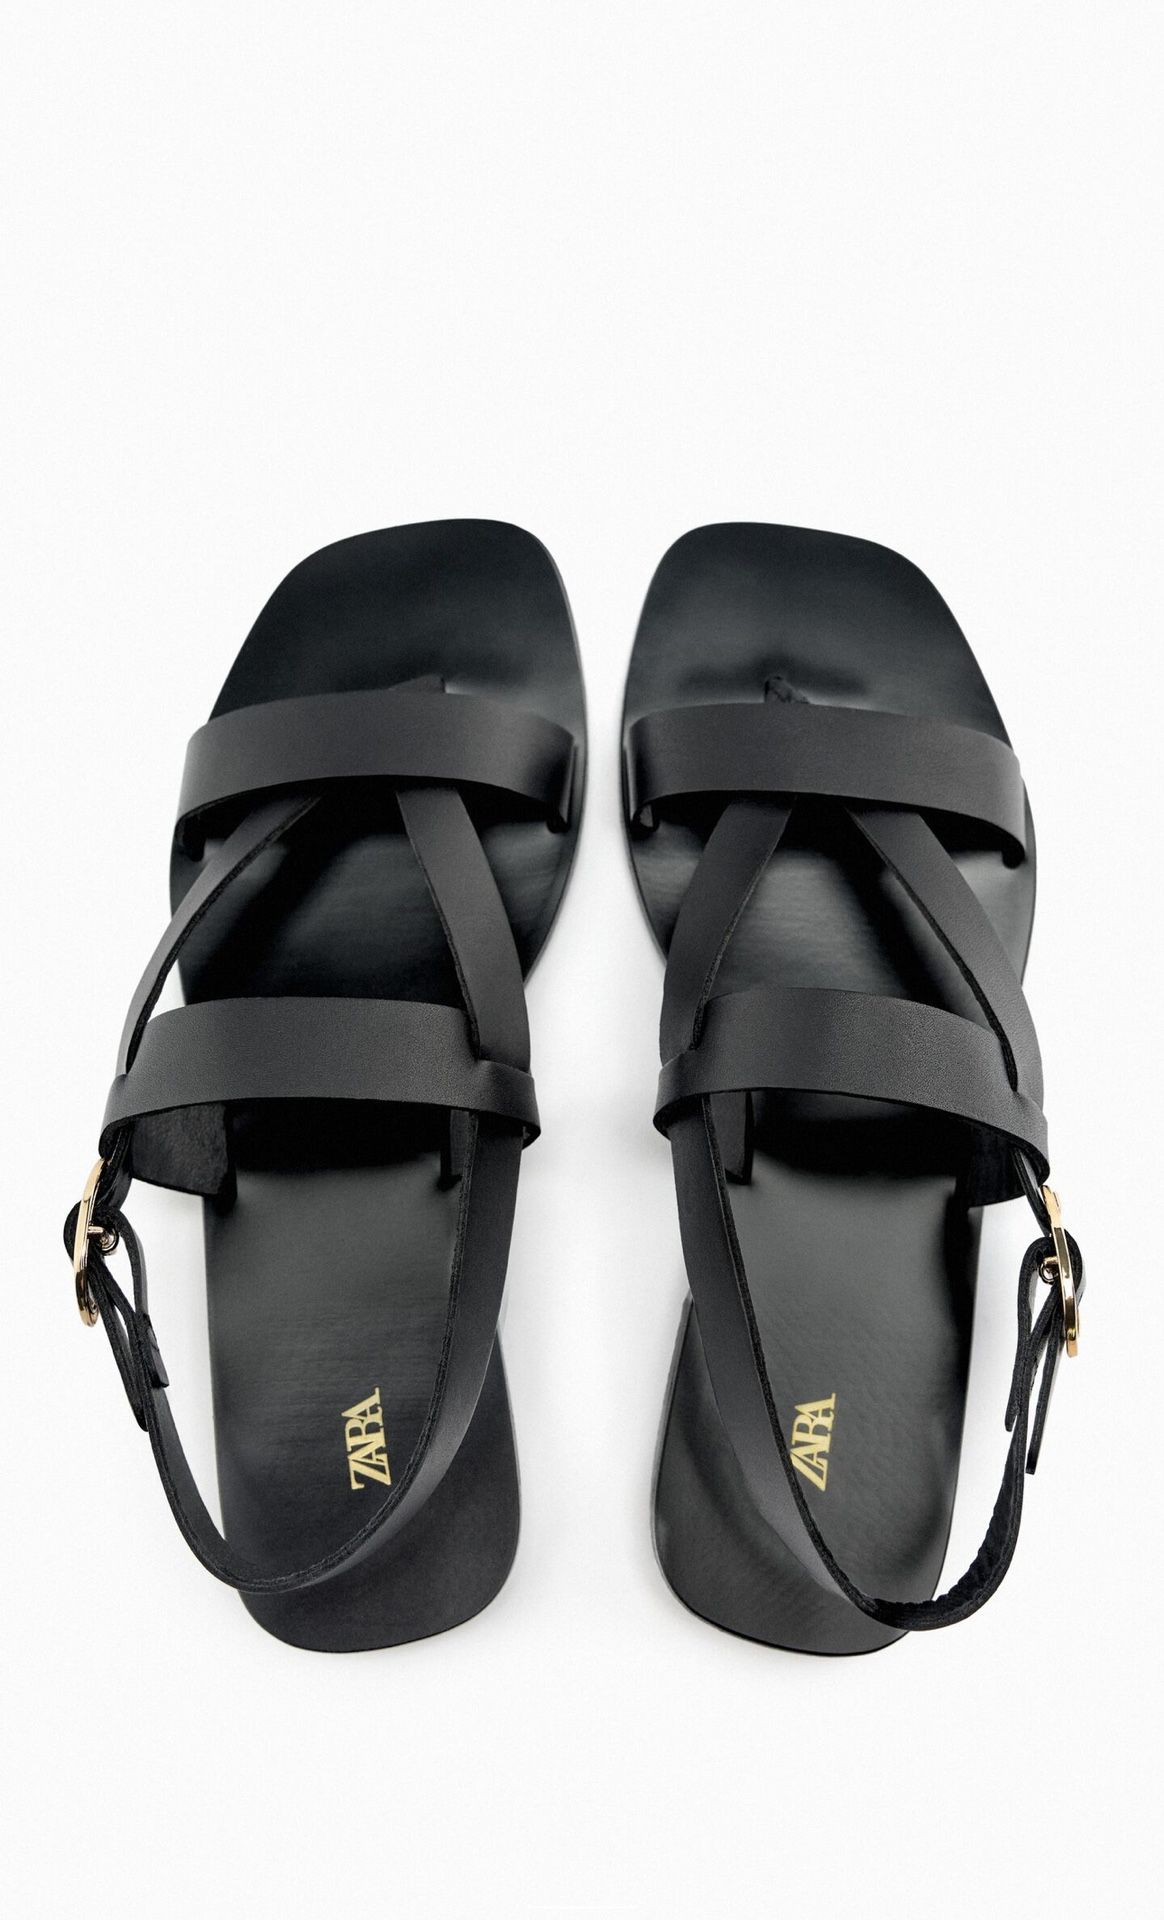 Black Faux Leather sandals 